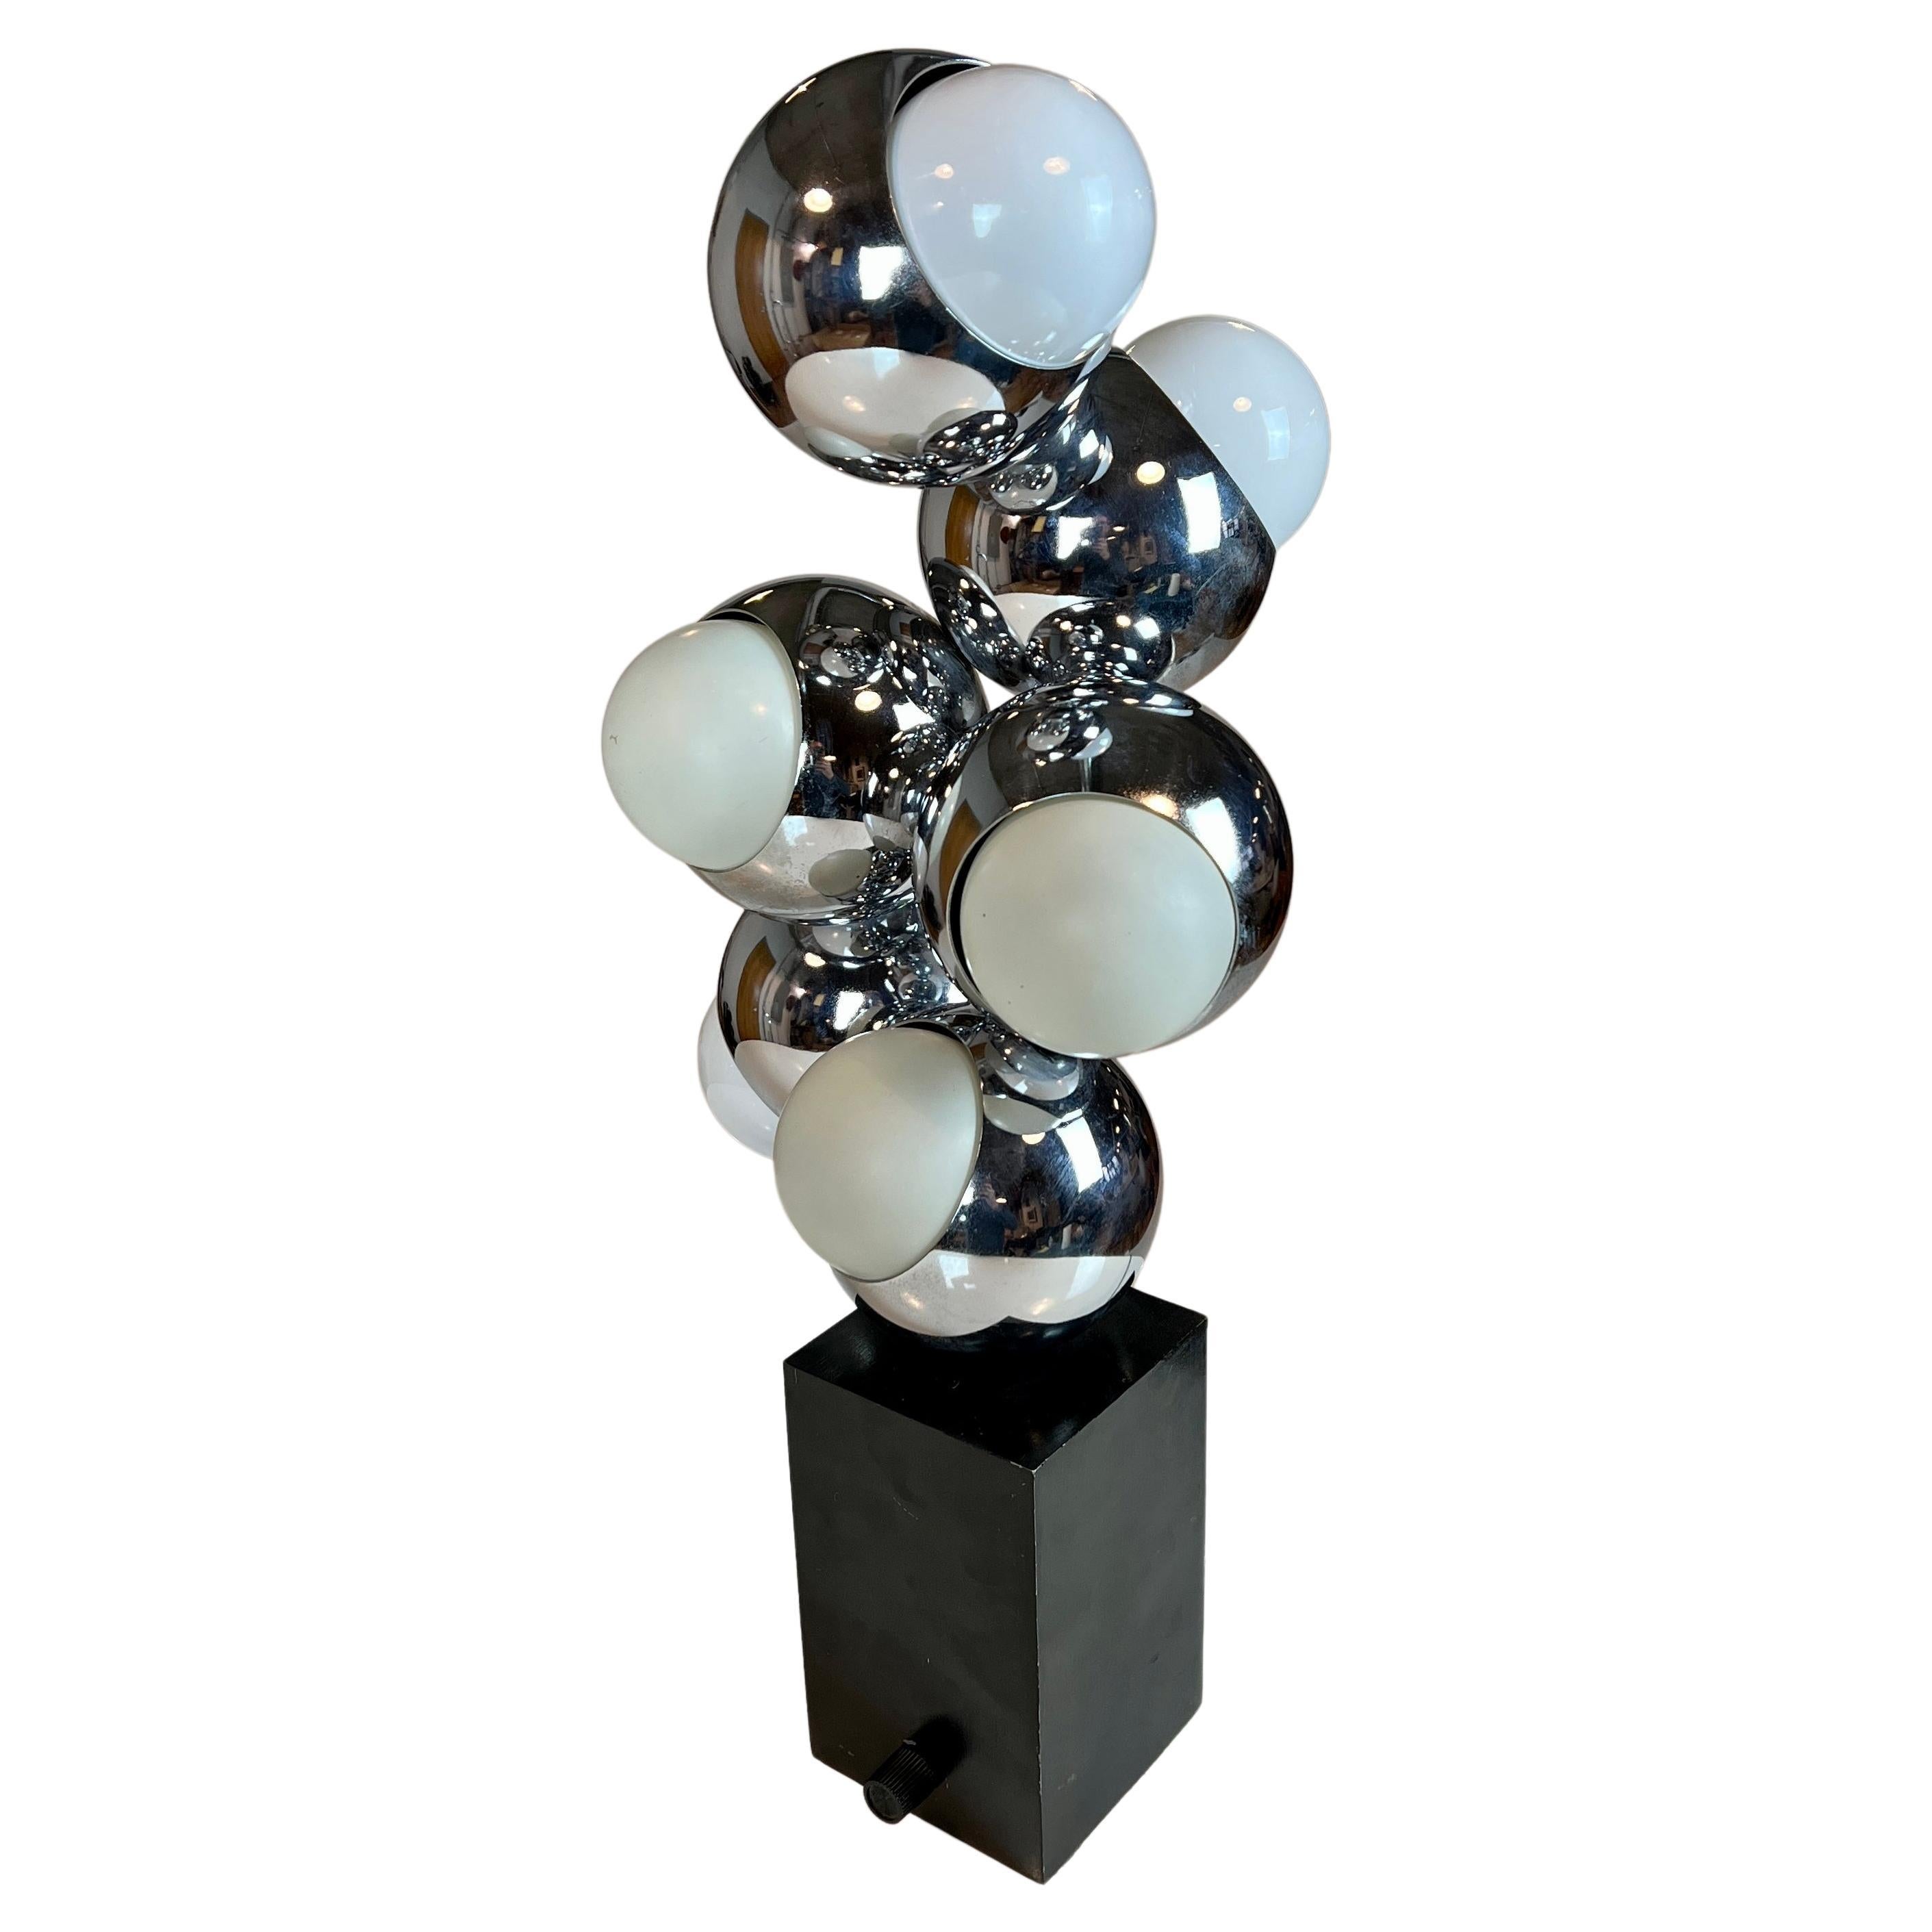 Space Age Molecule Lamp by Robert Sonneman